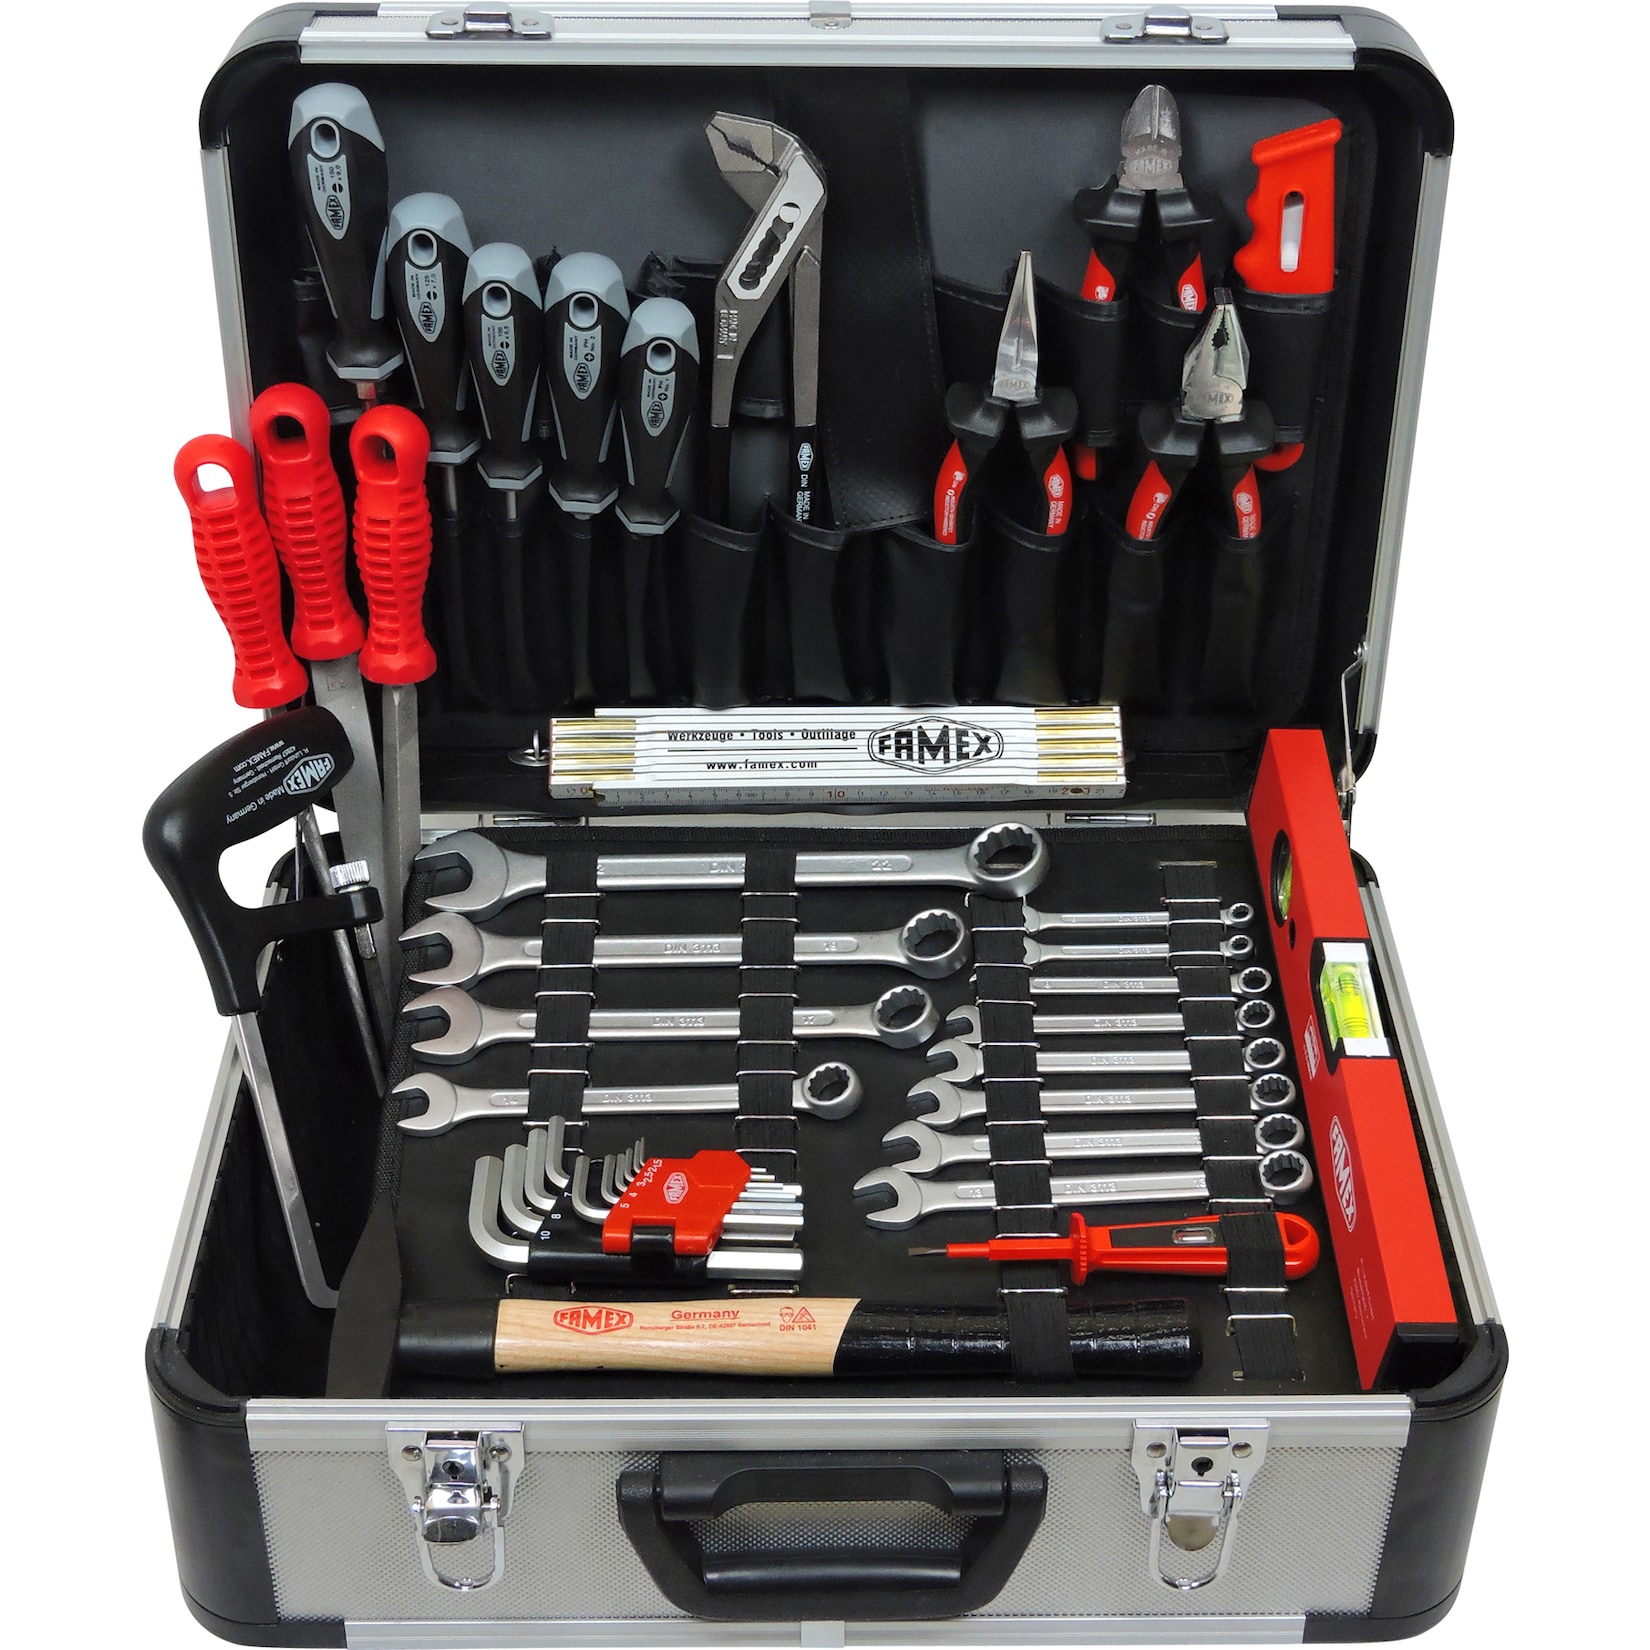 FAMEX 729-88 Profi Werkzeugkoffer mit Werkzeug in Top Qualität